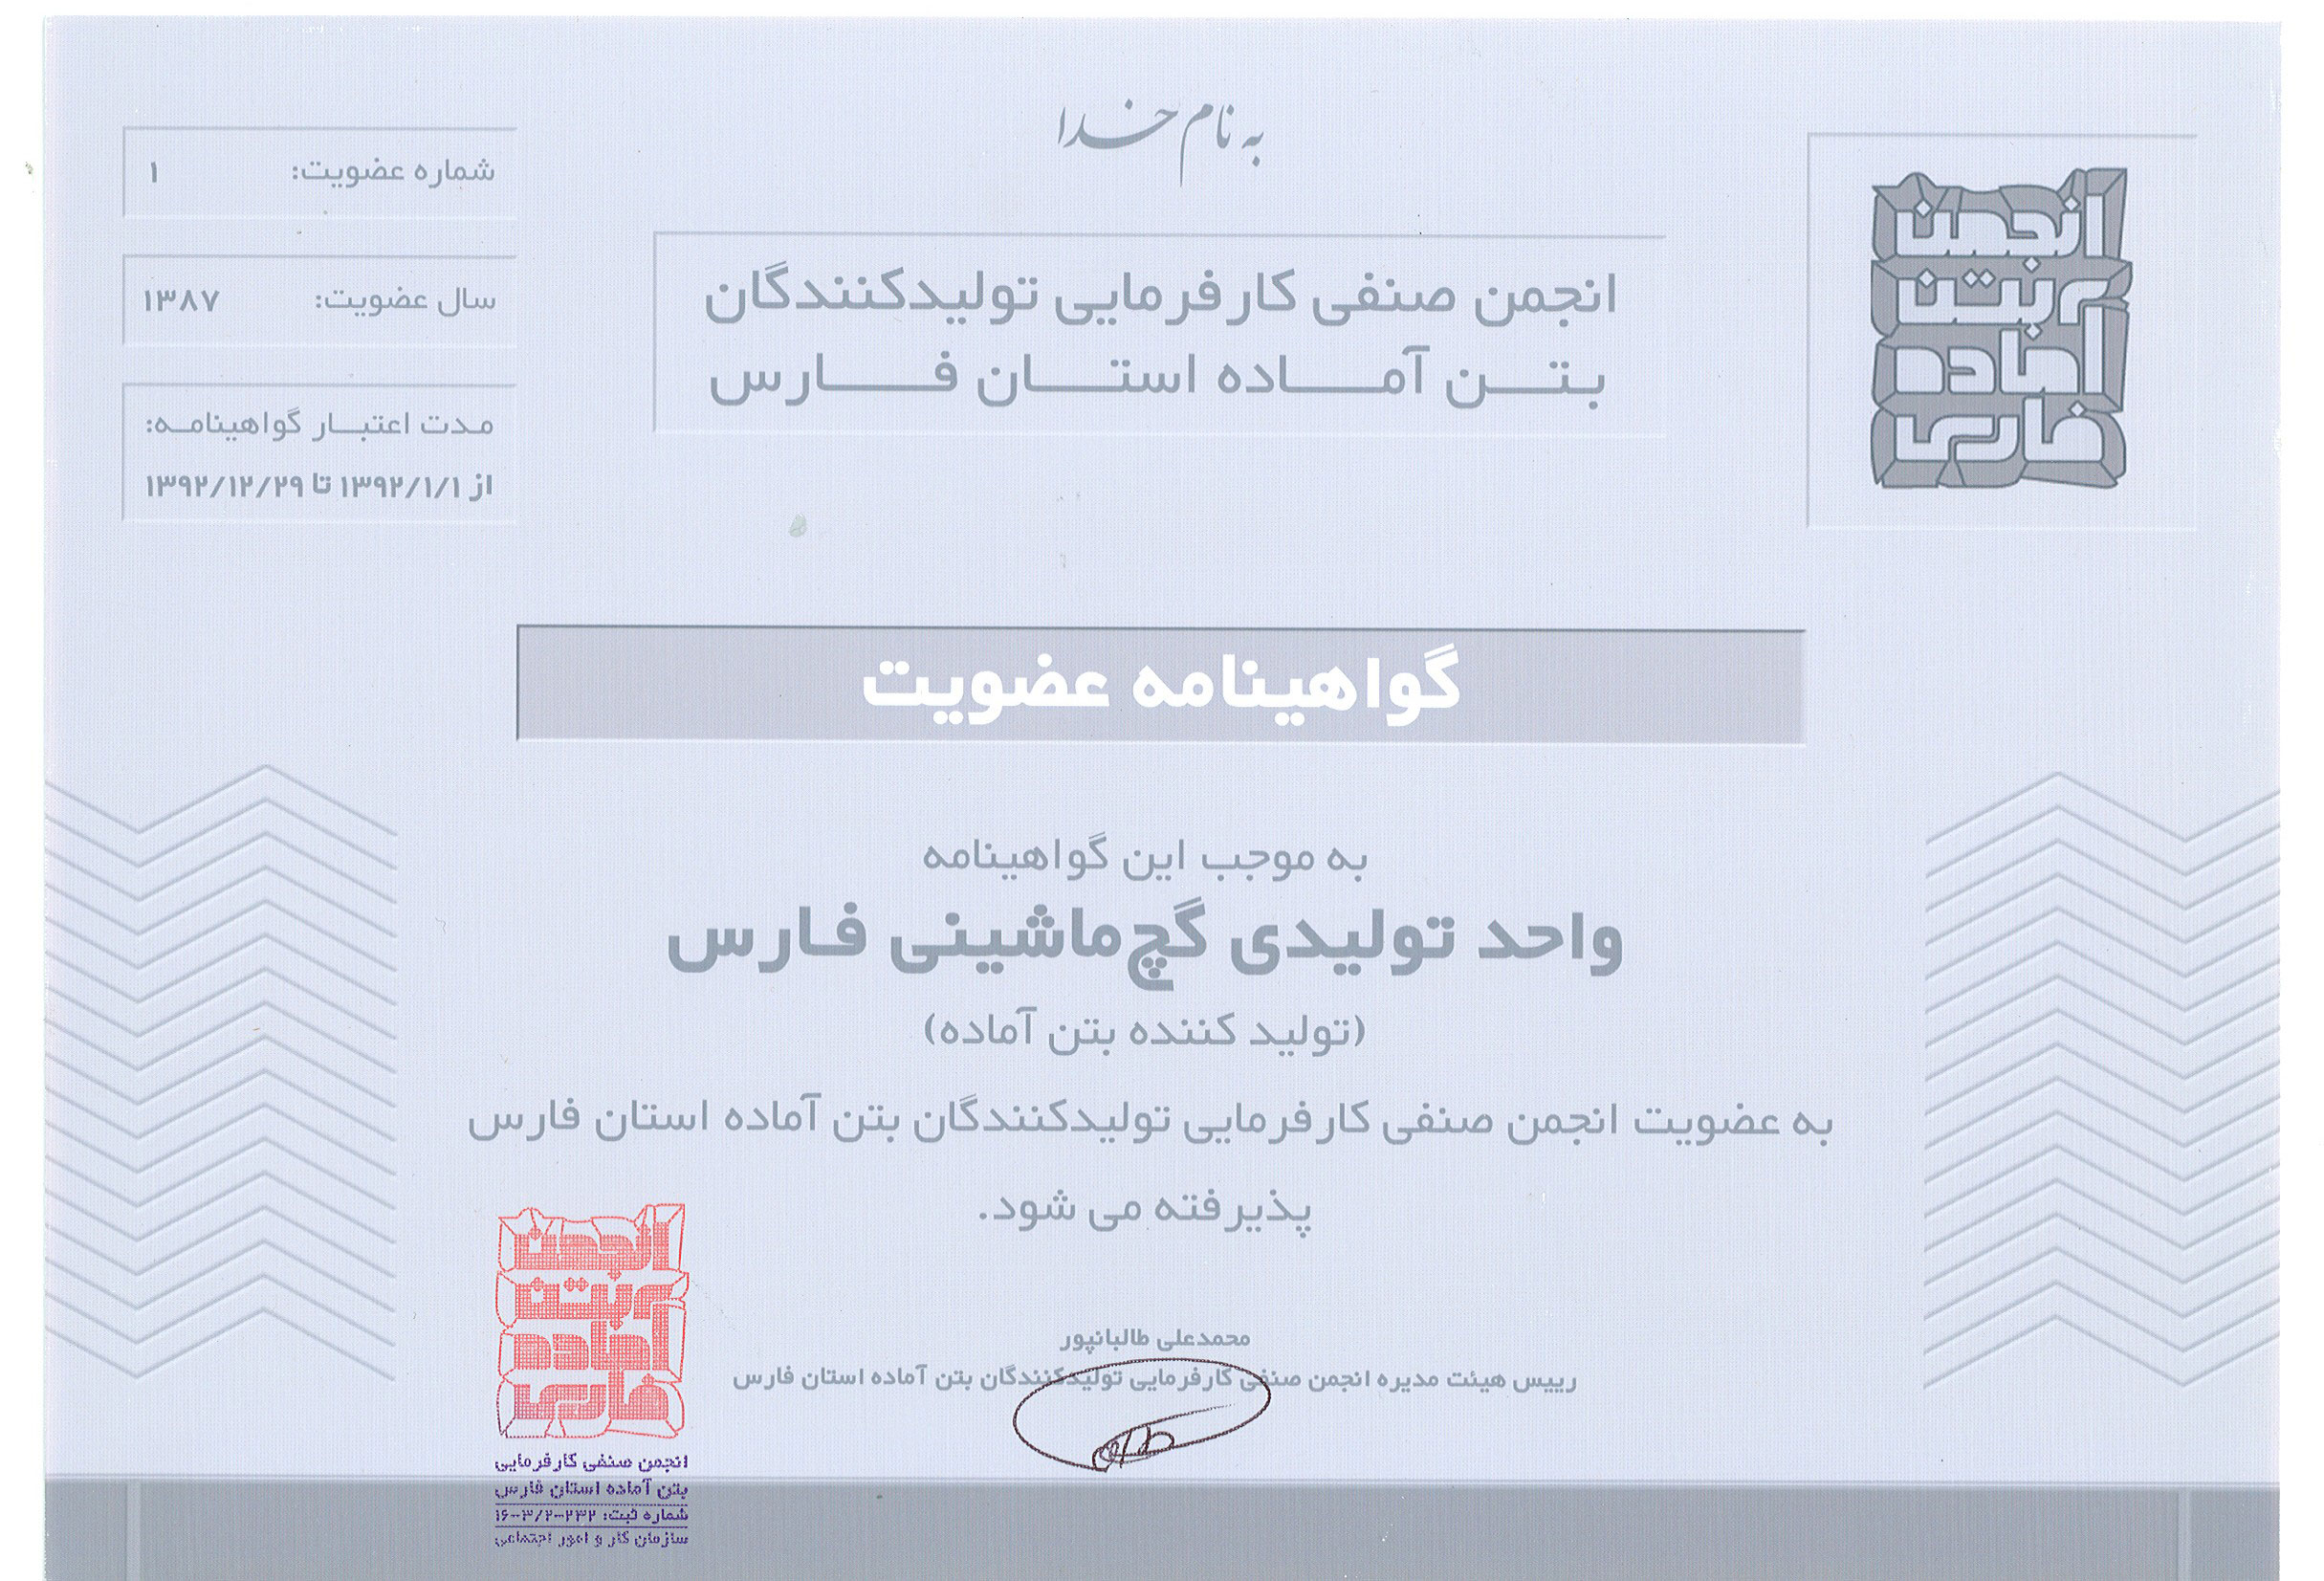 گواهینامه‌ی عضویت در انجمن صنفی کارفرمایی تولیدکنندگان بتن اماده فارس